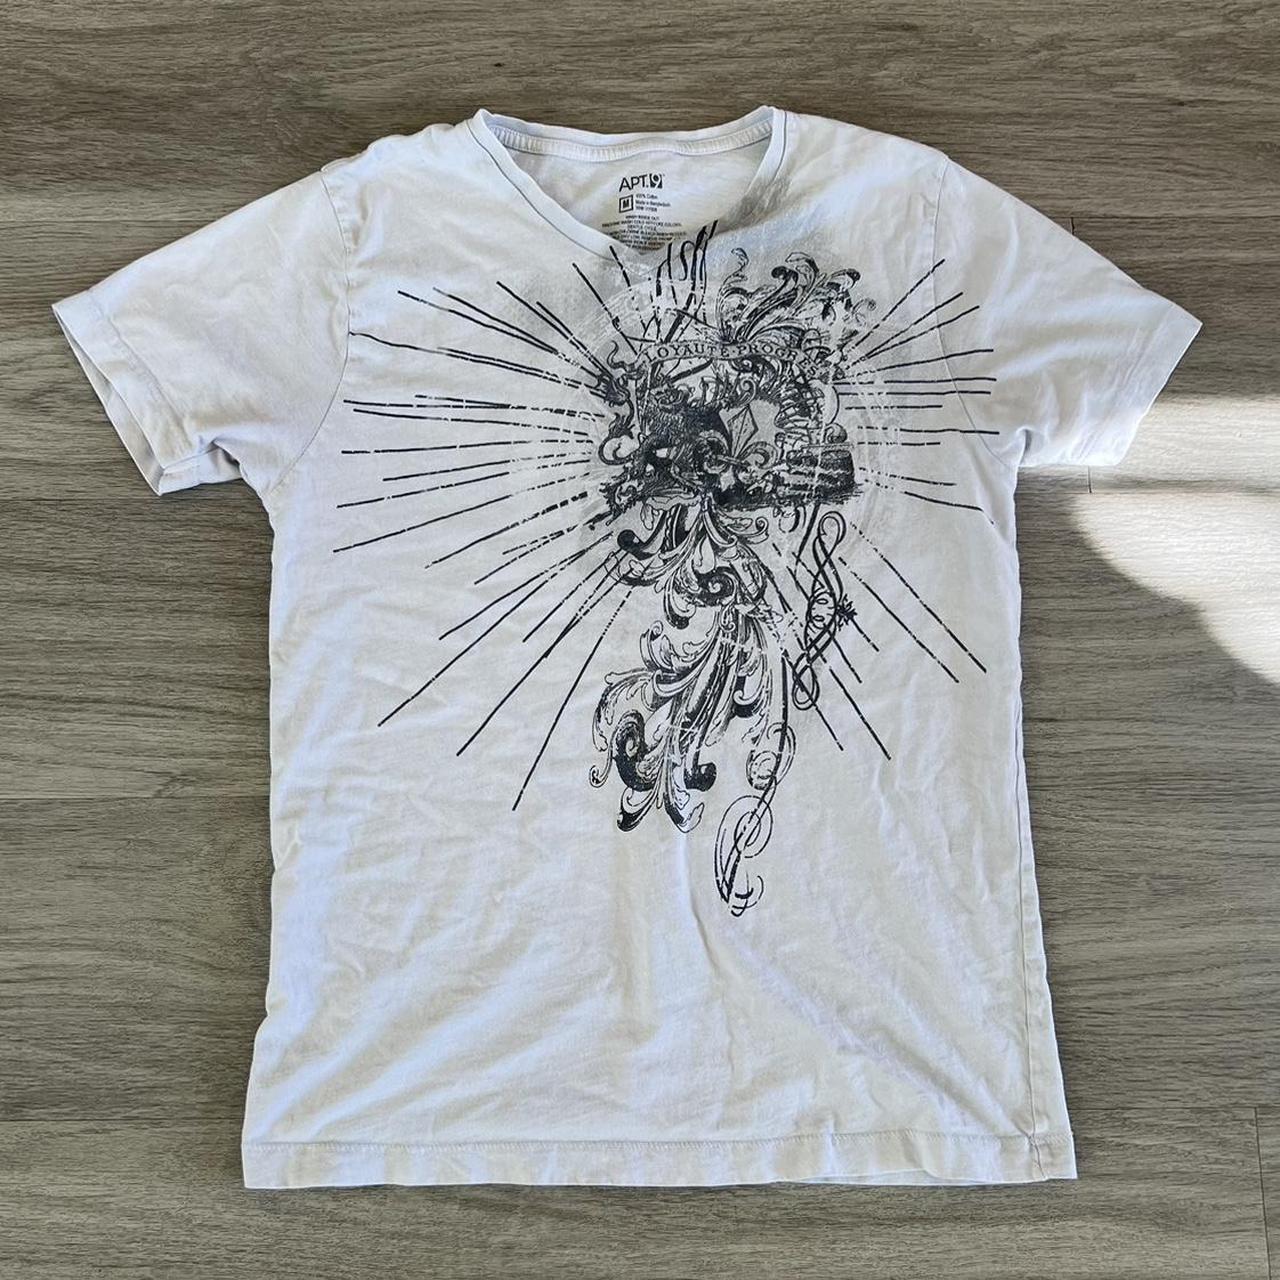 Sick grunge y2k shirt Sick design Size M Dm for... - Depop